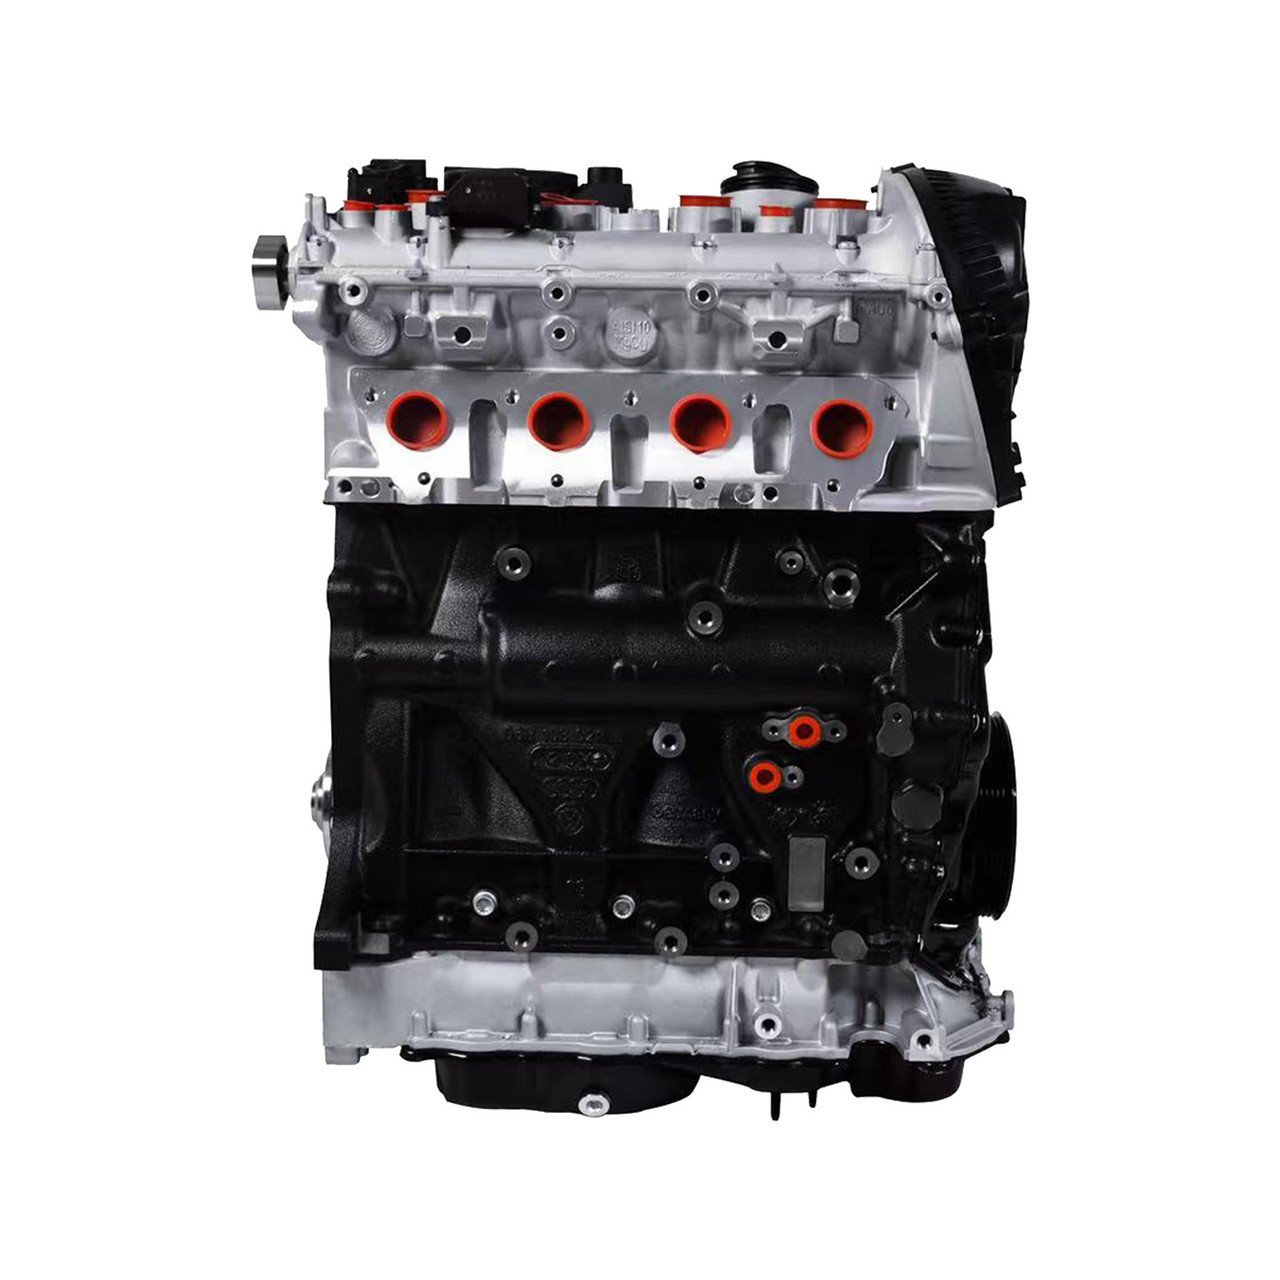 EA888 GEN2 CDA 1.8T Gasoline Engine Motor 06J100035J 06J100037 For Golf